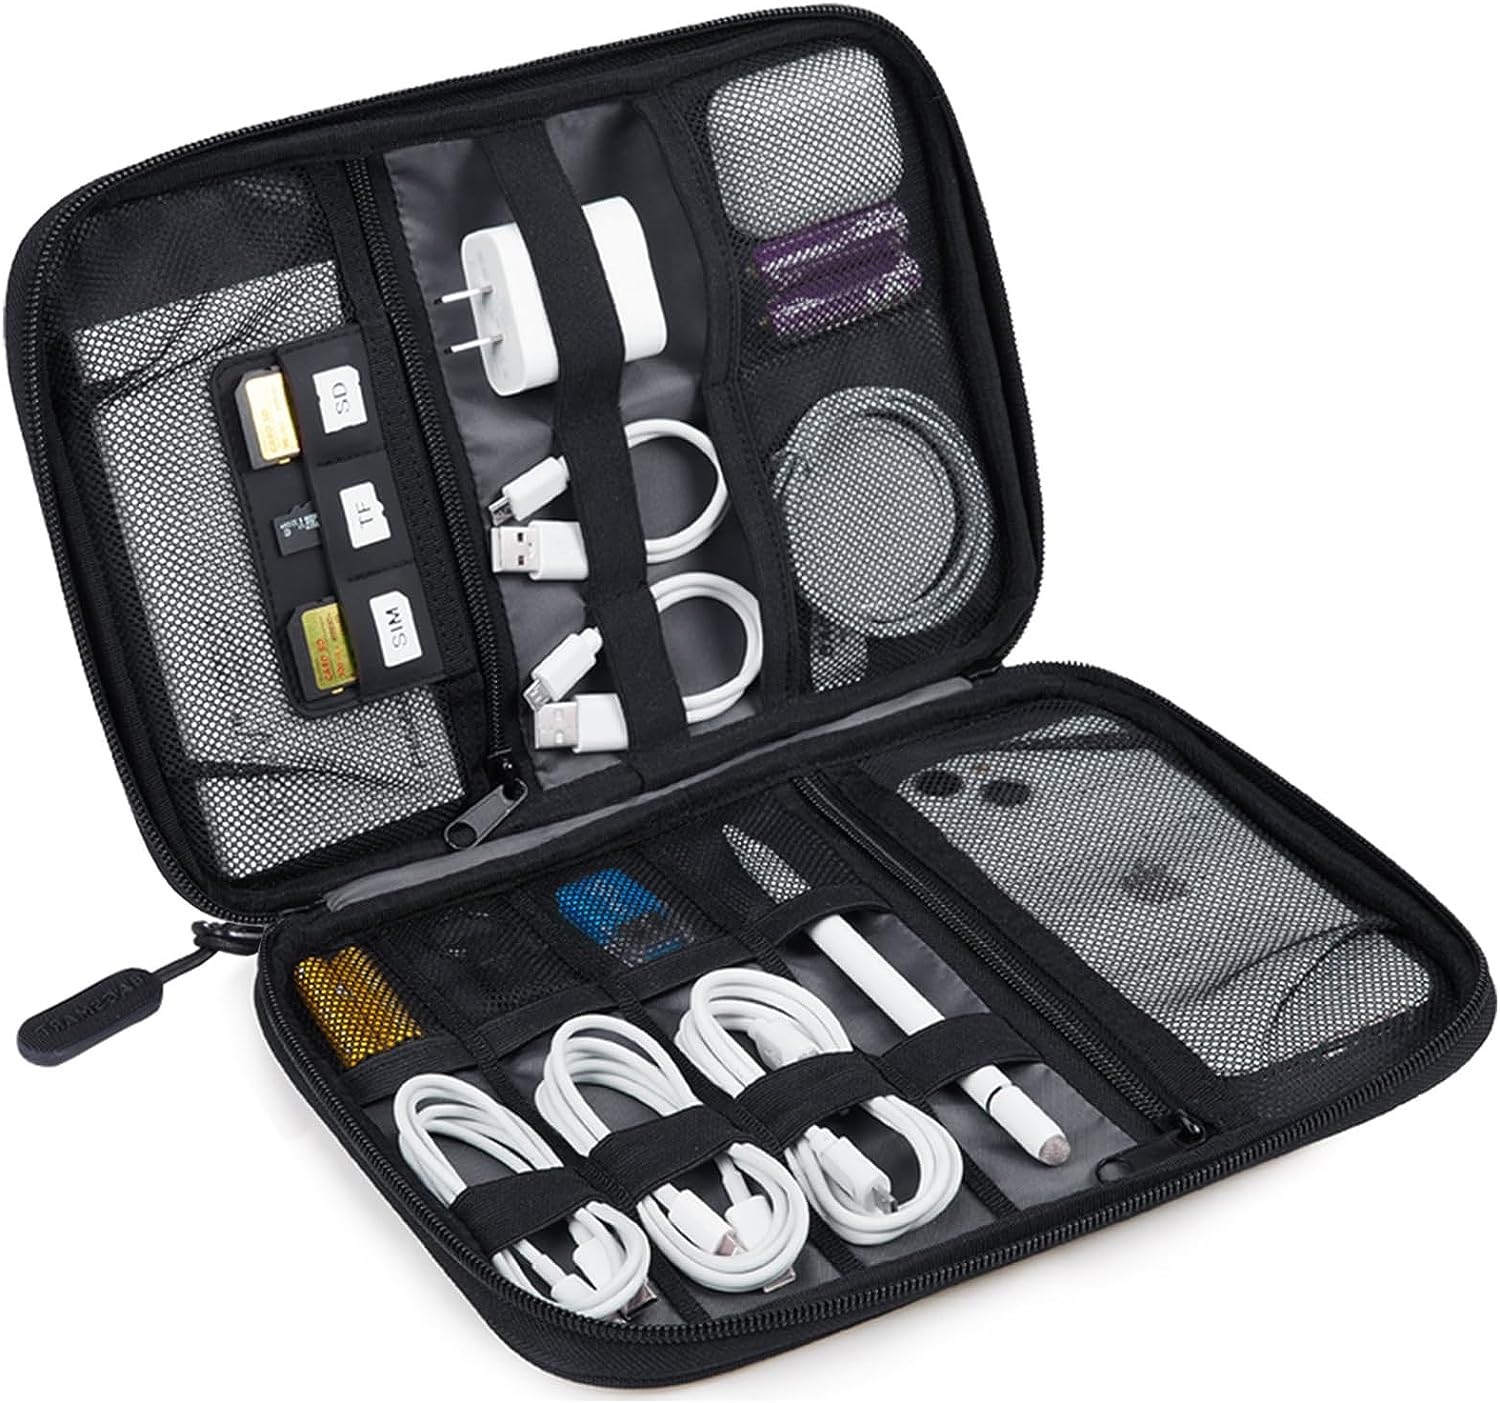 Electronics Organizer Travel Case, Gagmay nga Cable Organizer Bag alang sa Essentials